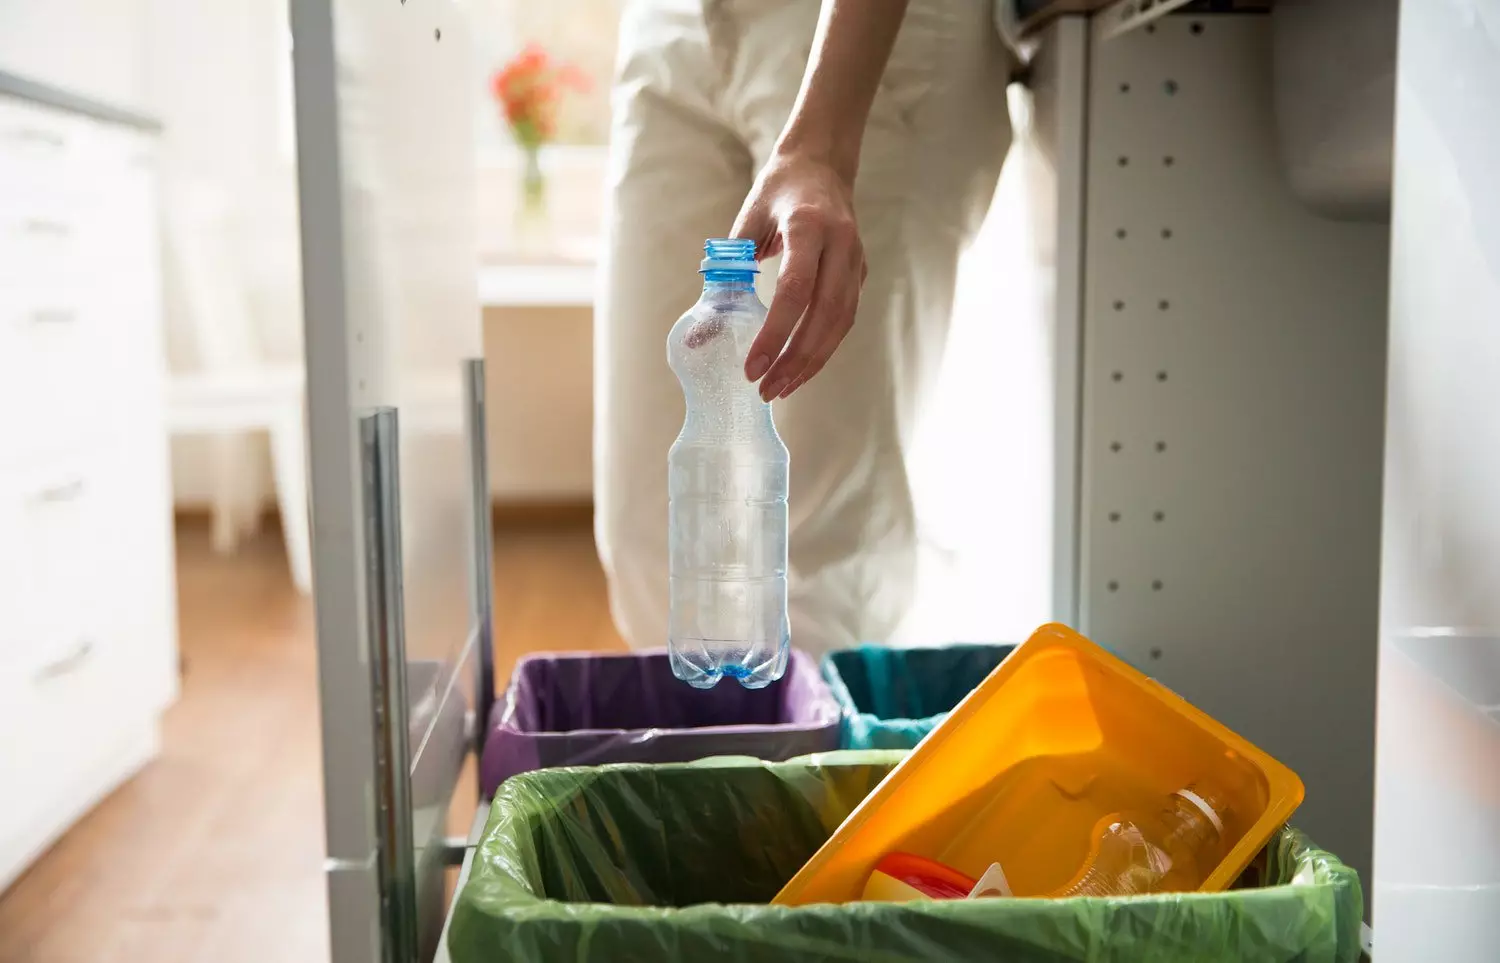 Kako organizirati zasebnu kolekciju smeća kod kuće?